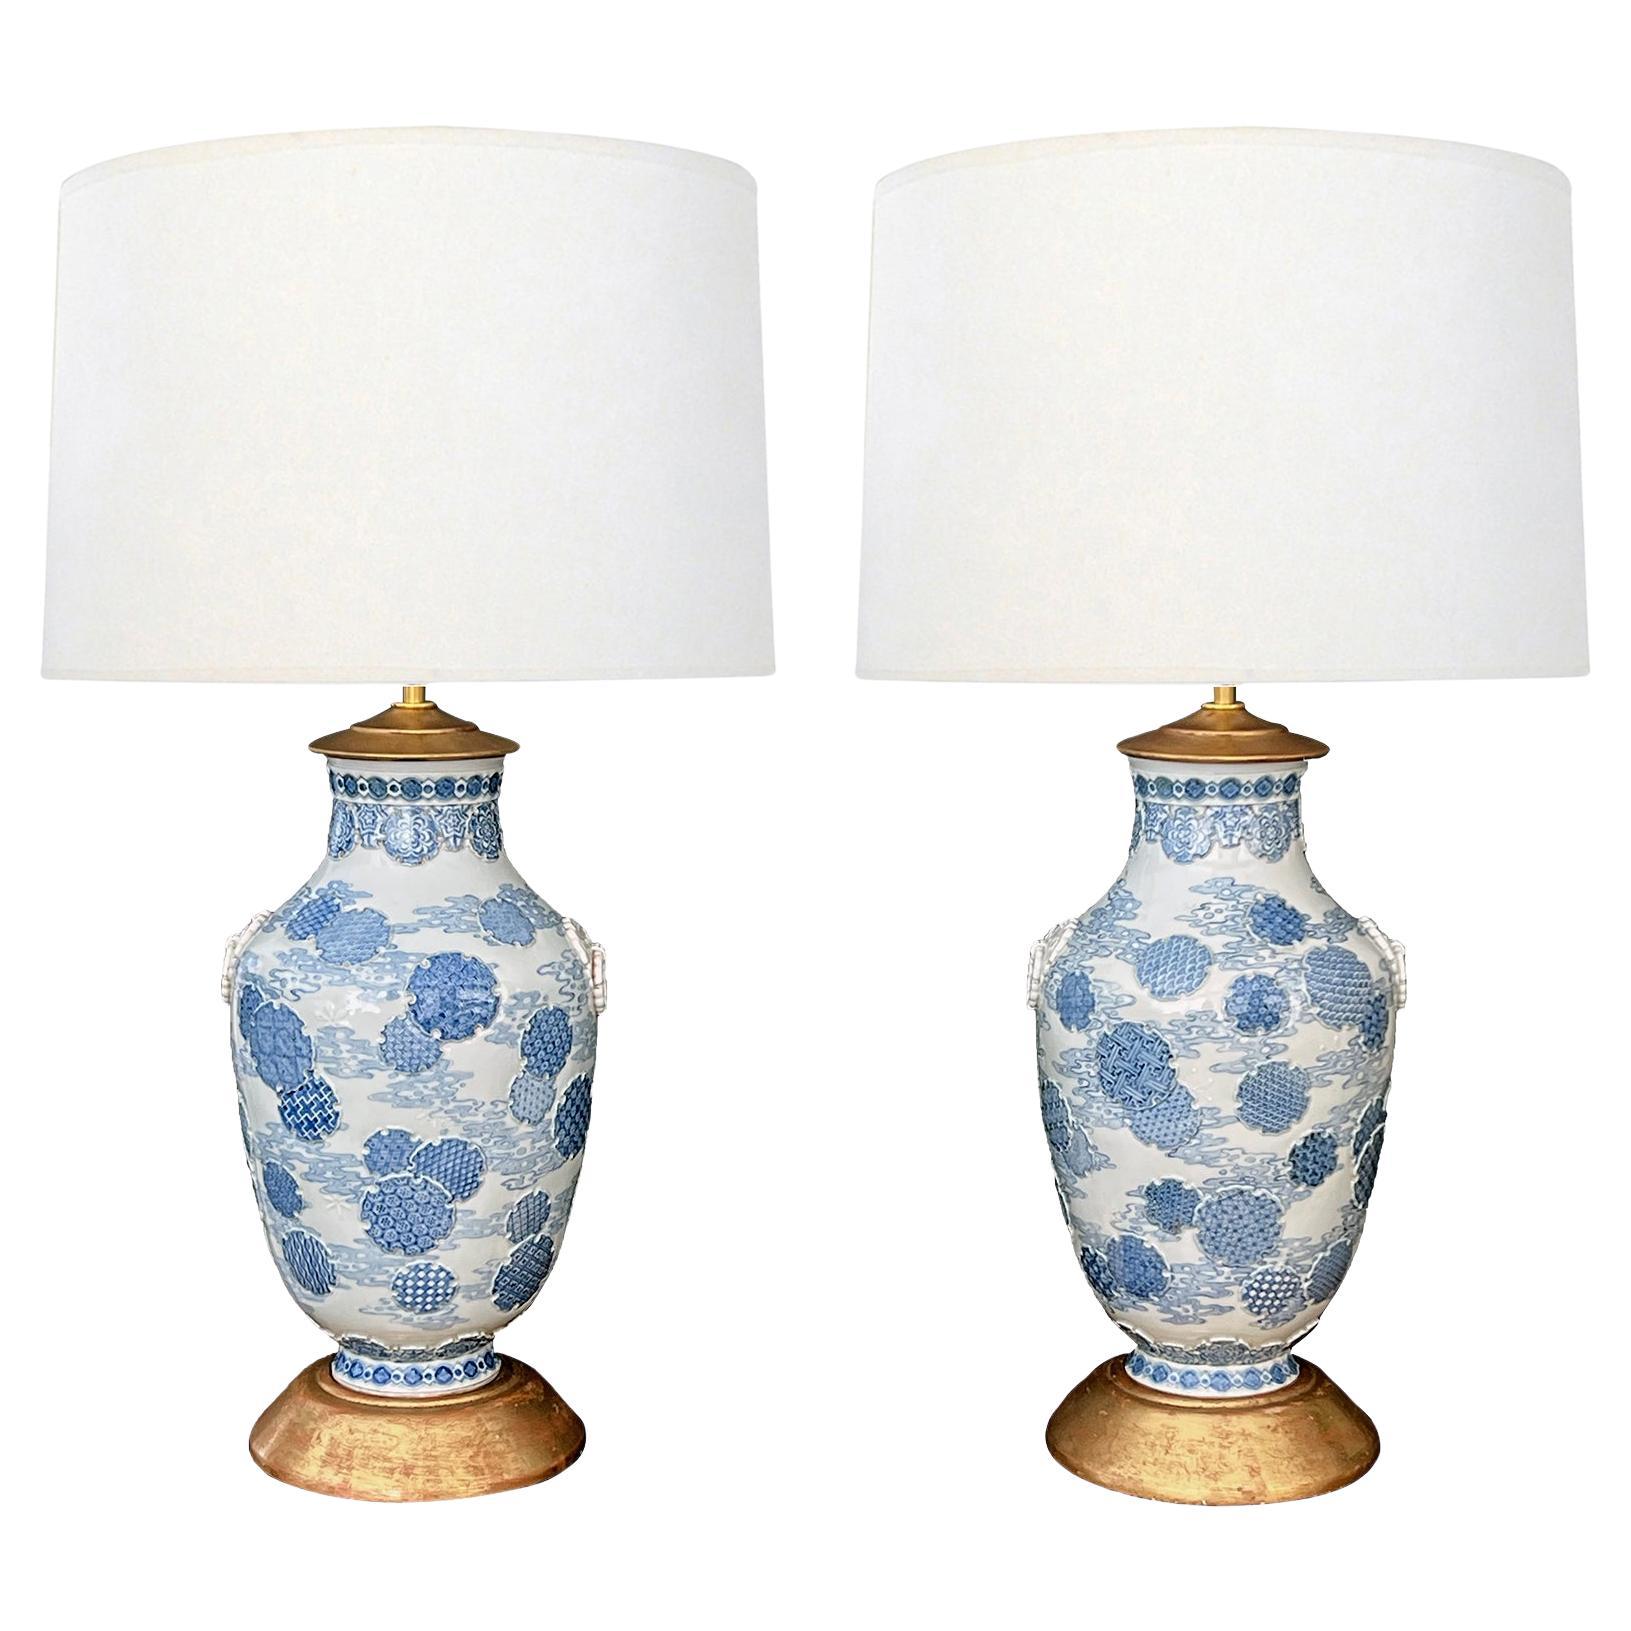 Ein bedeutendes Paar blau-weißer japanischer Vasen aus der Meiji-Periode, jetzt als Lampen montiert